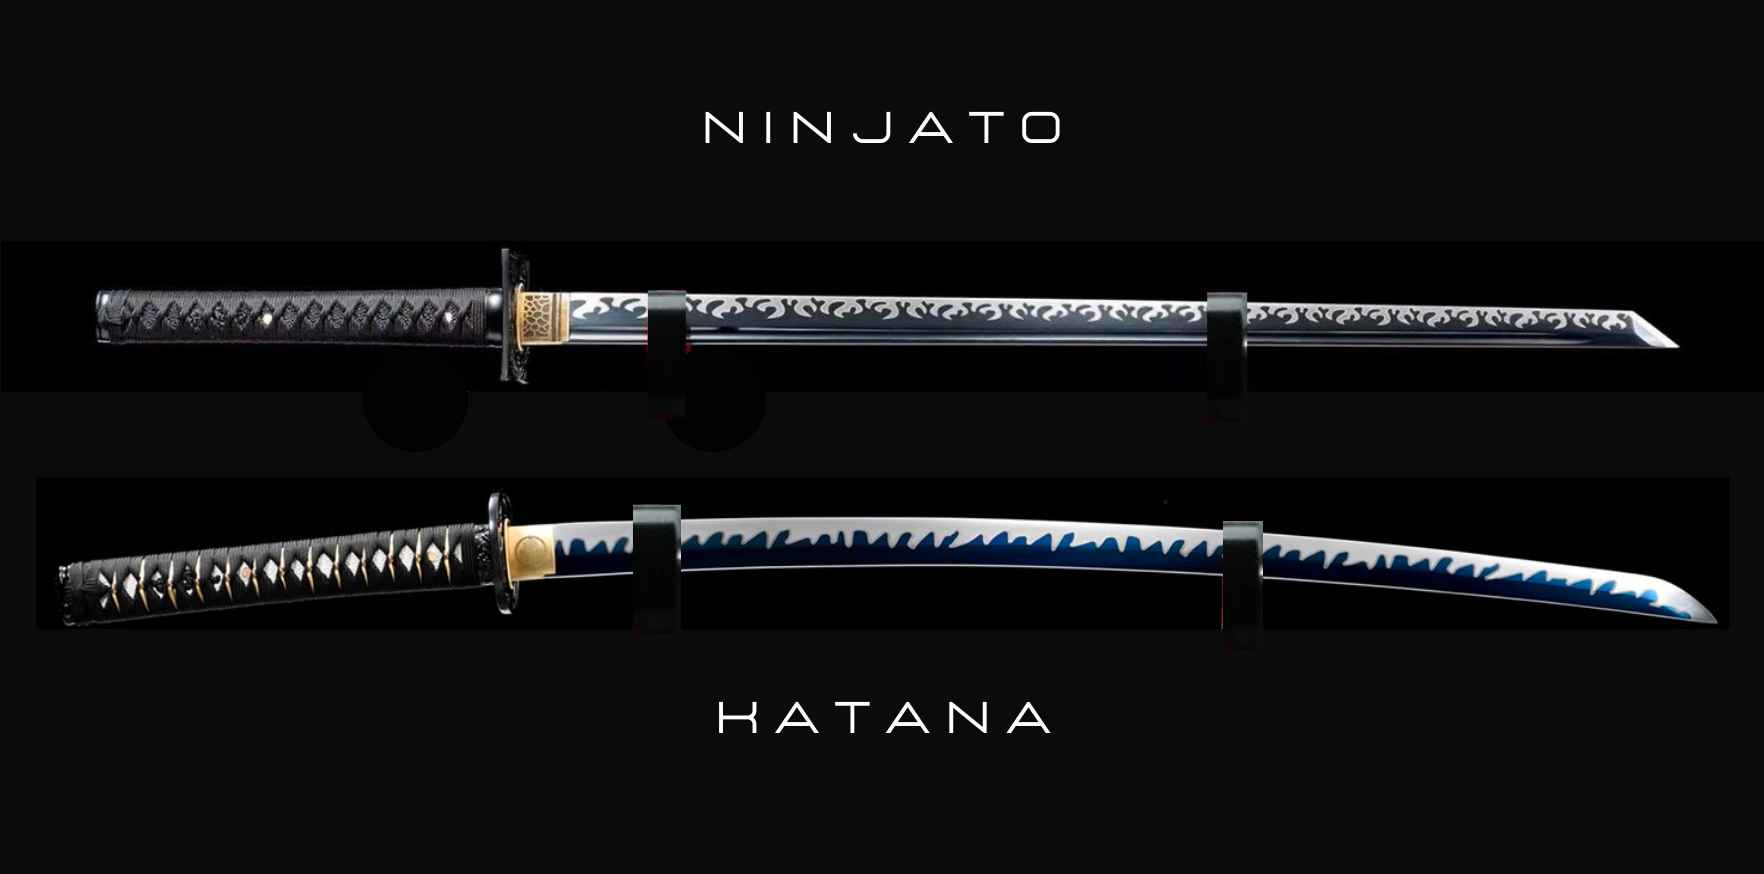 ninjato and katana differences